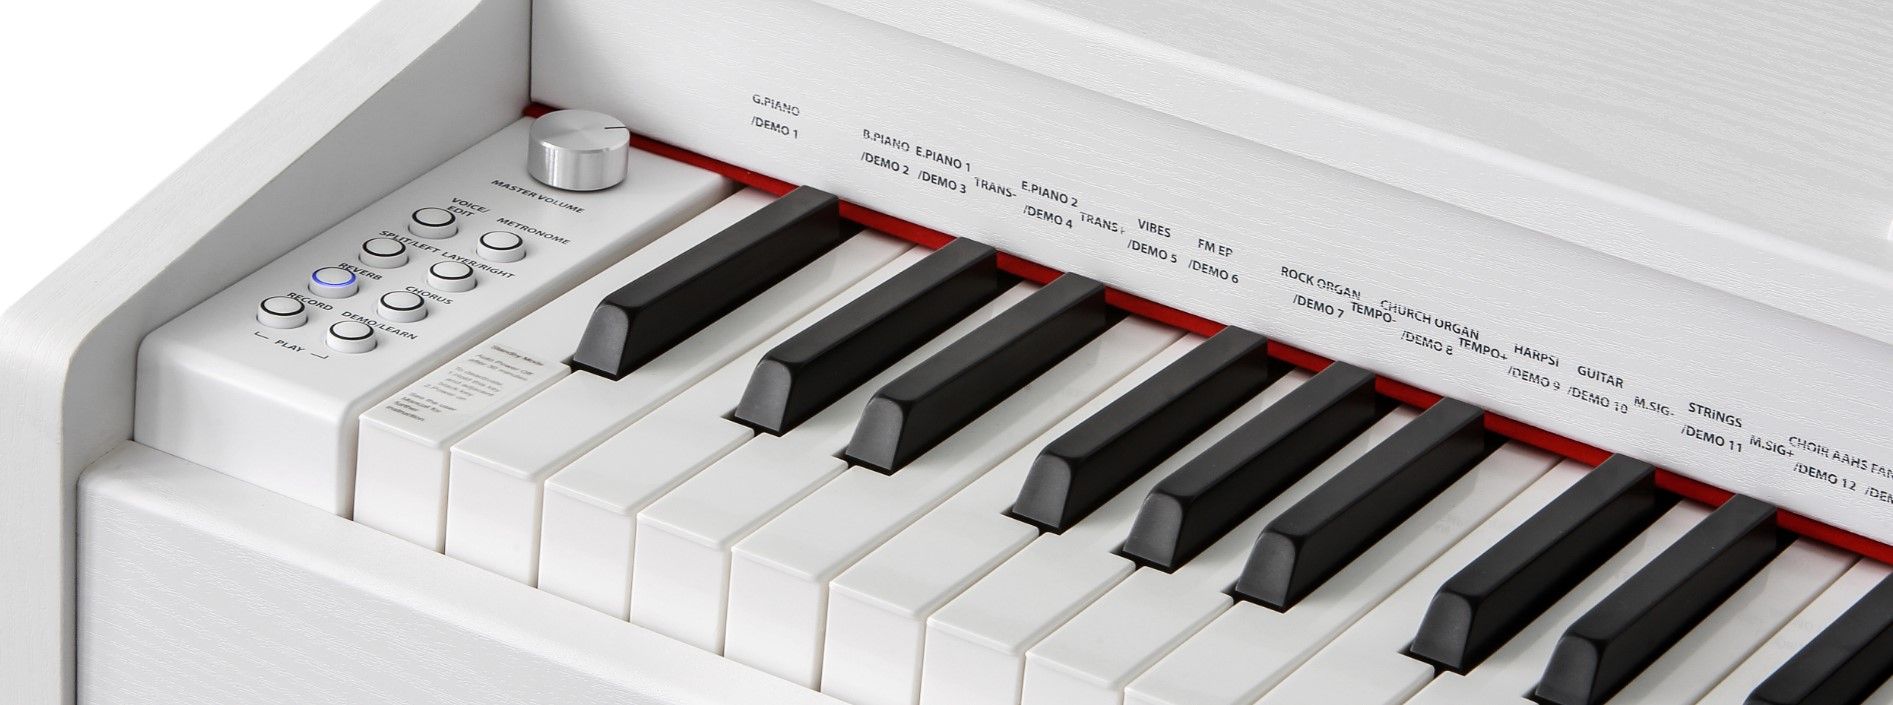  digitális zongora kurzweil M70 wh fejhallgató csatlakozó kiváló ár/minőség arány könnyen kezelhető usb port midi automatikus kísérőprogramok